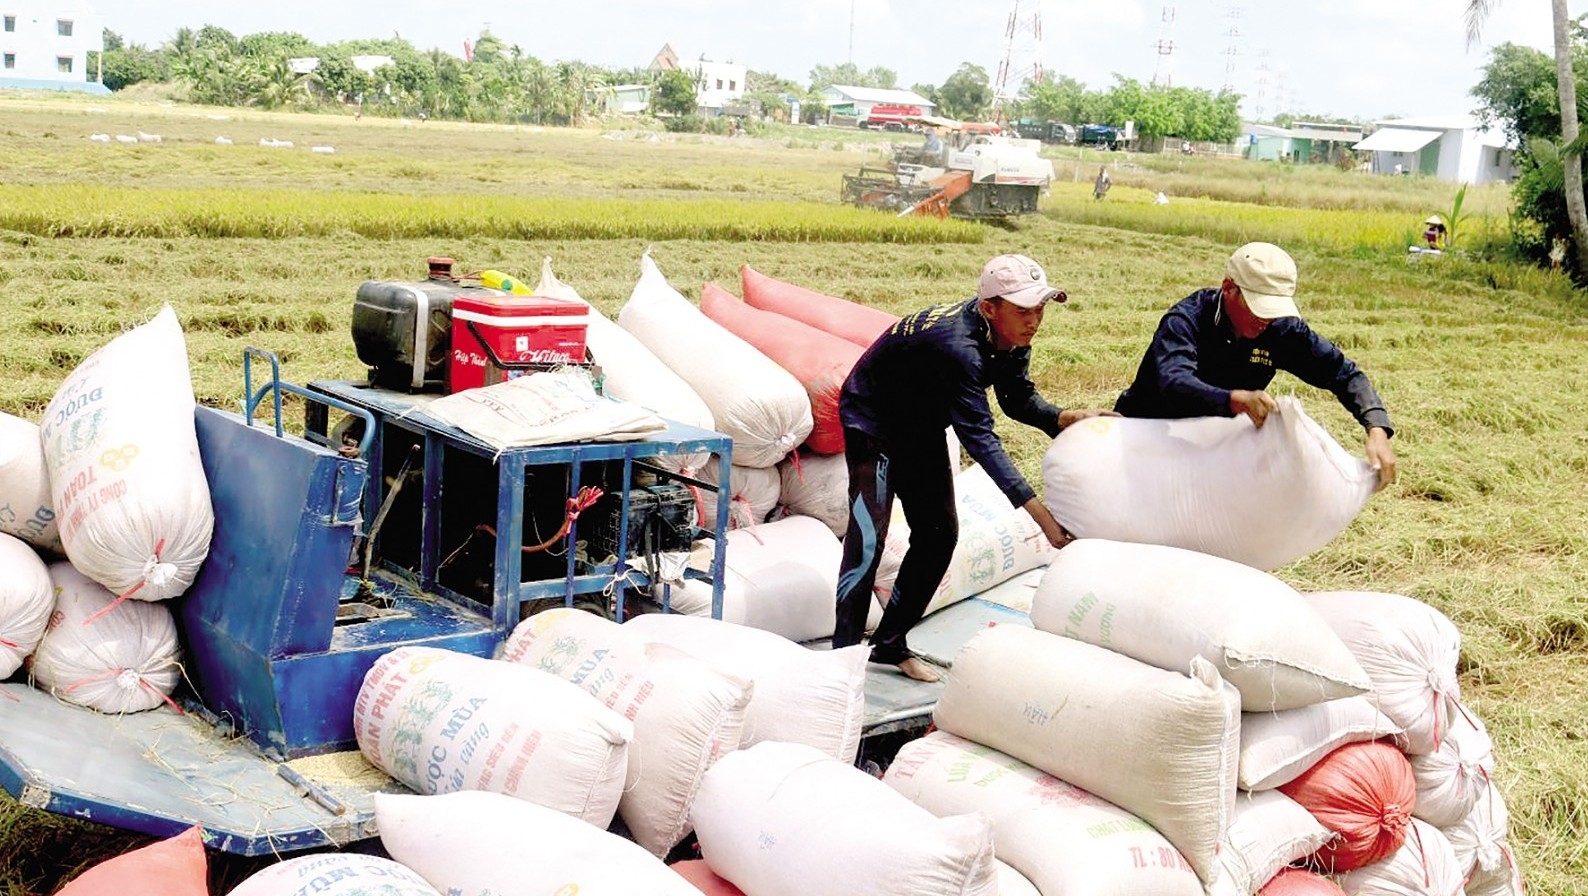 vietnamese-rice-export-5